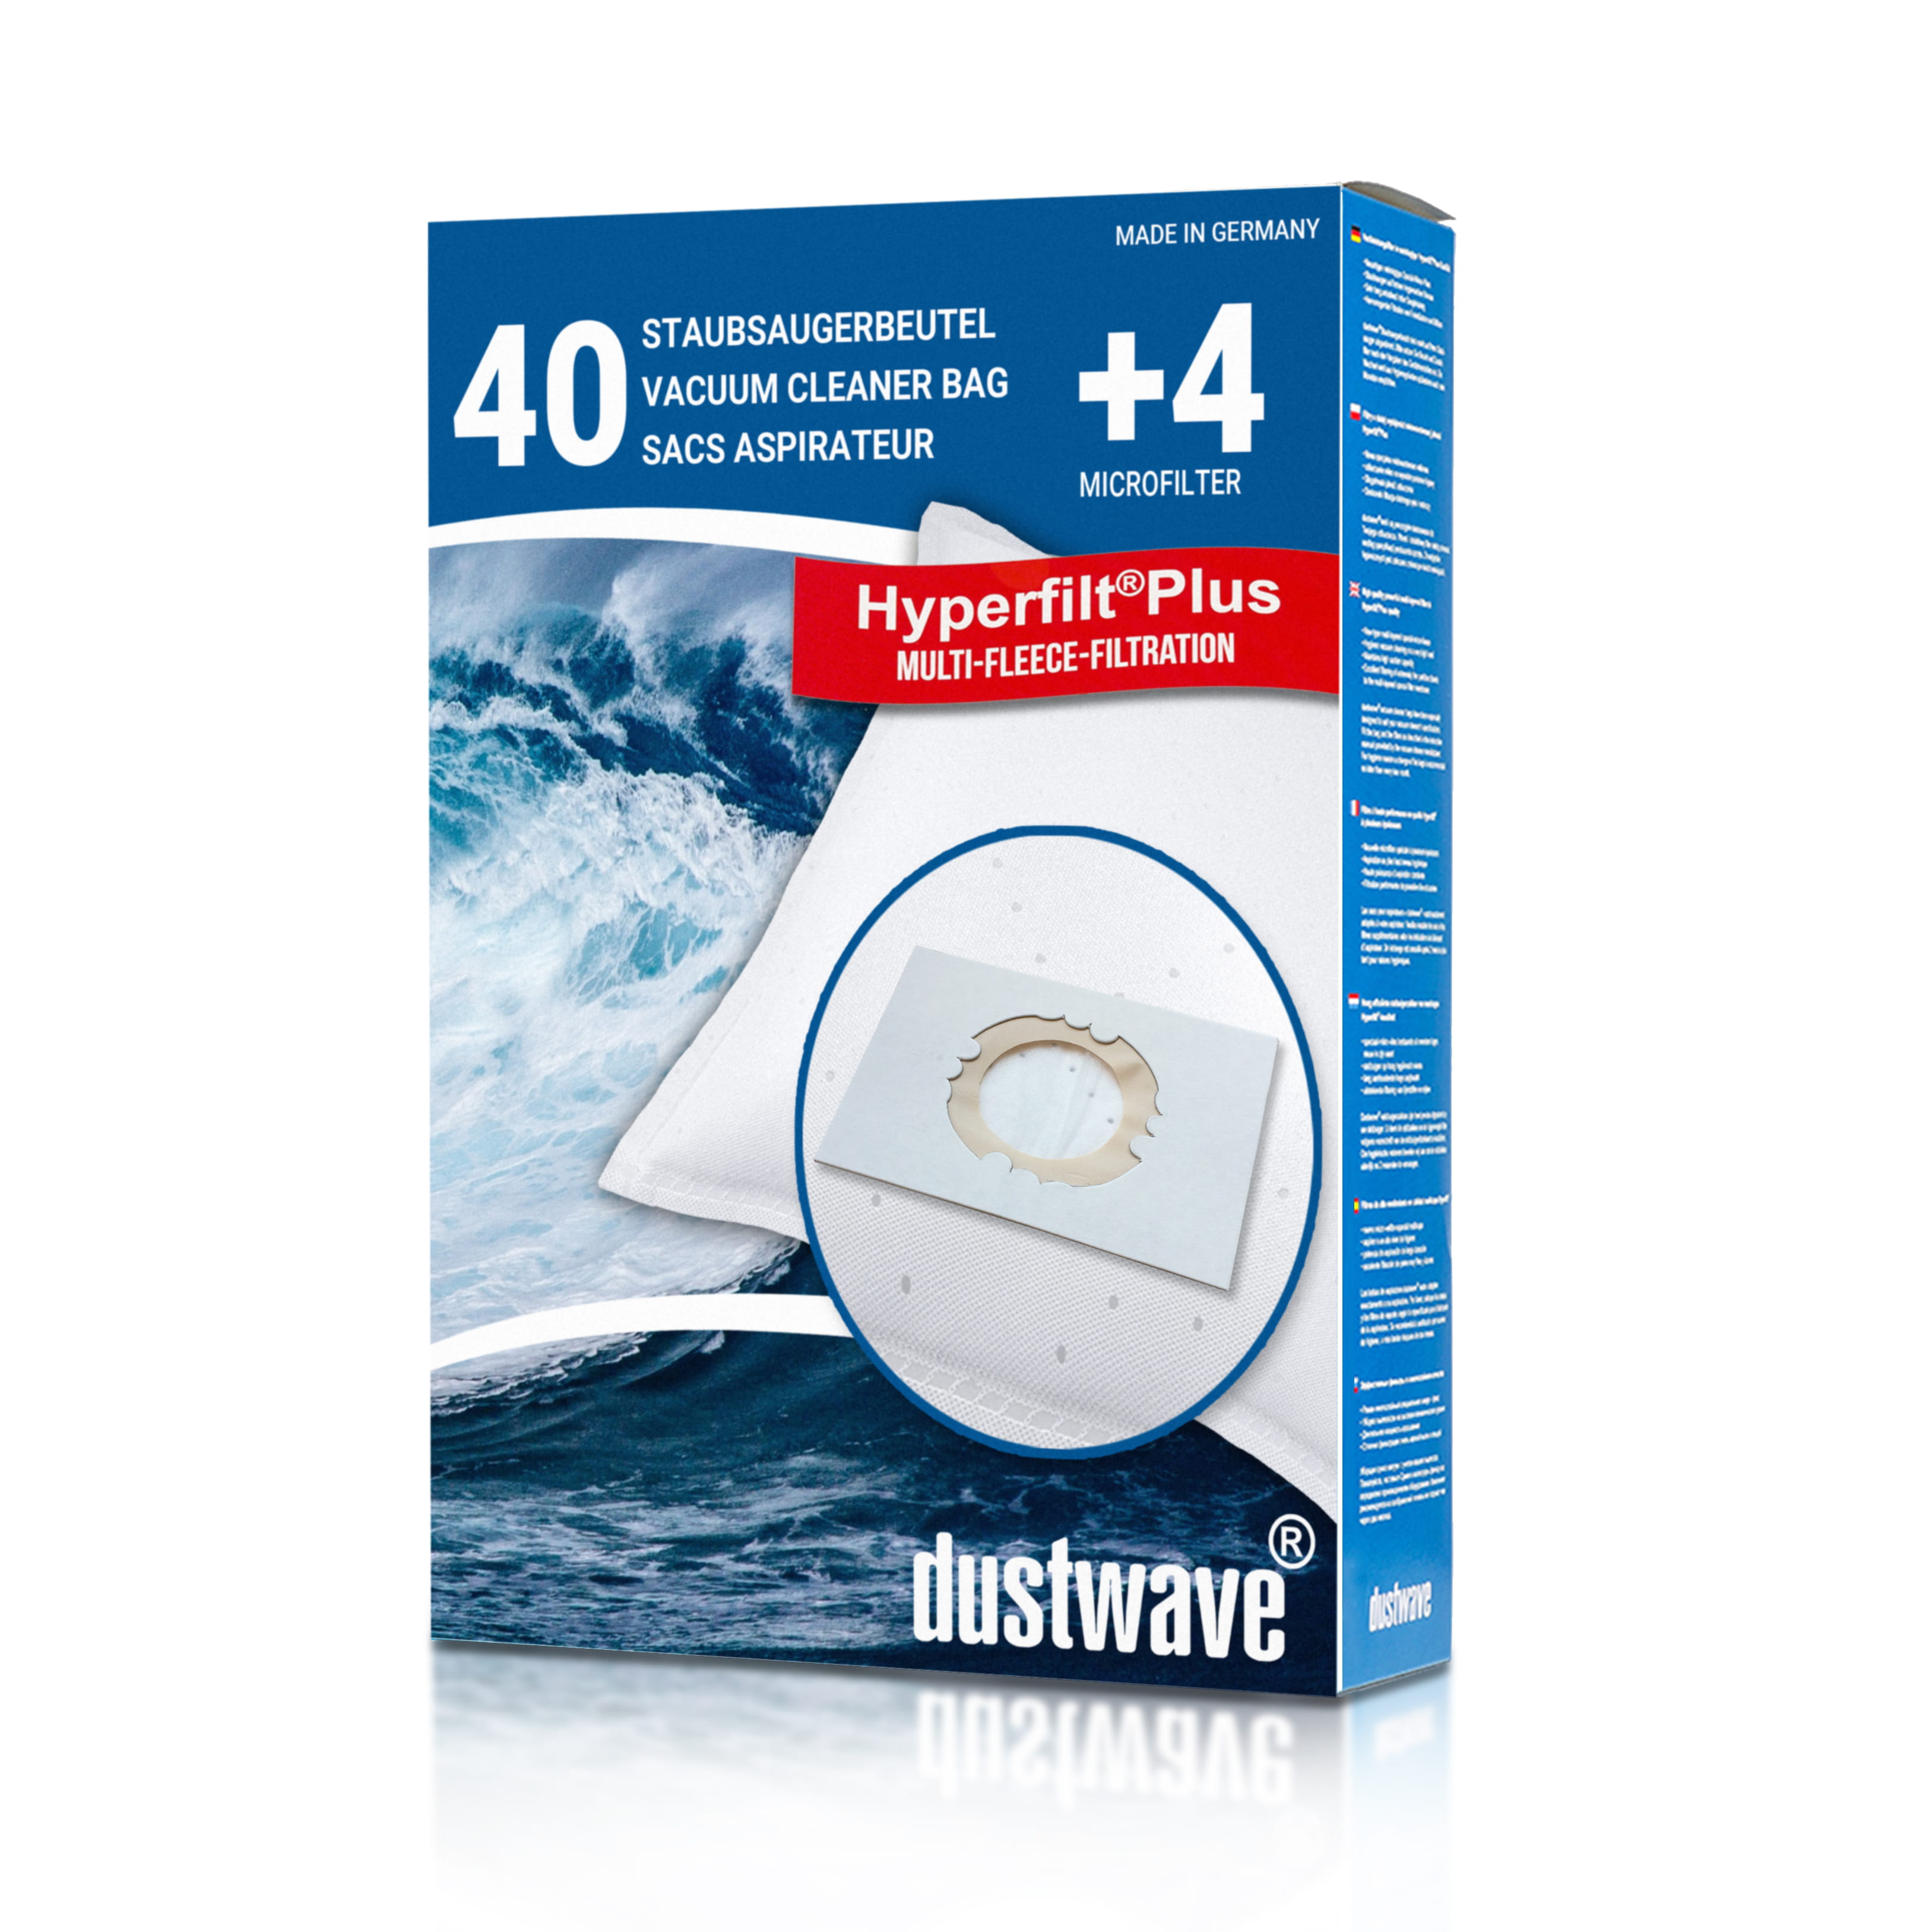 Dustwave® 40 Staubsaugerbeutel für Hoover H 33 / H33 - hocheffizient, mehrlagiges Mikrovlies mit Hygieneverschluss - Made in Germany